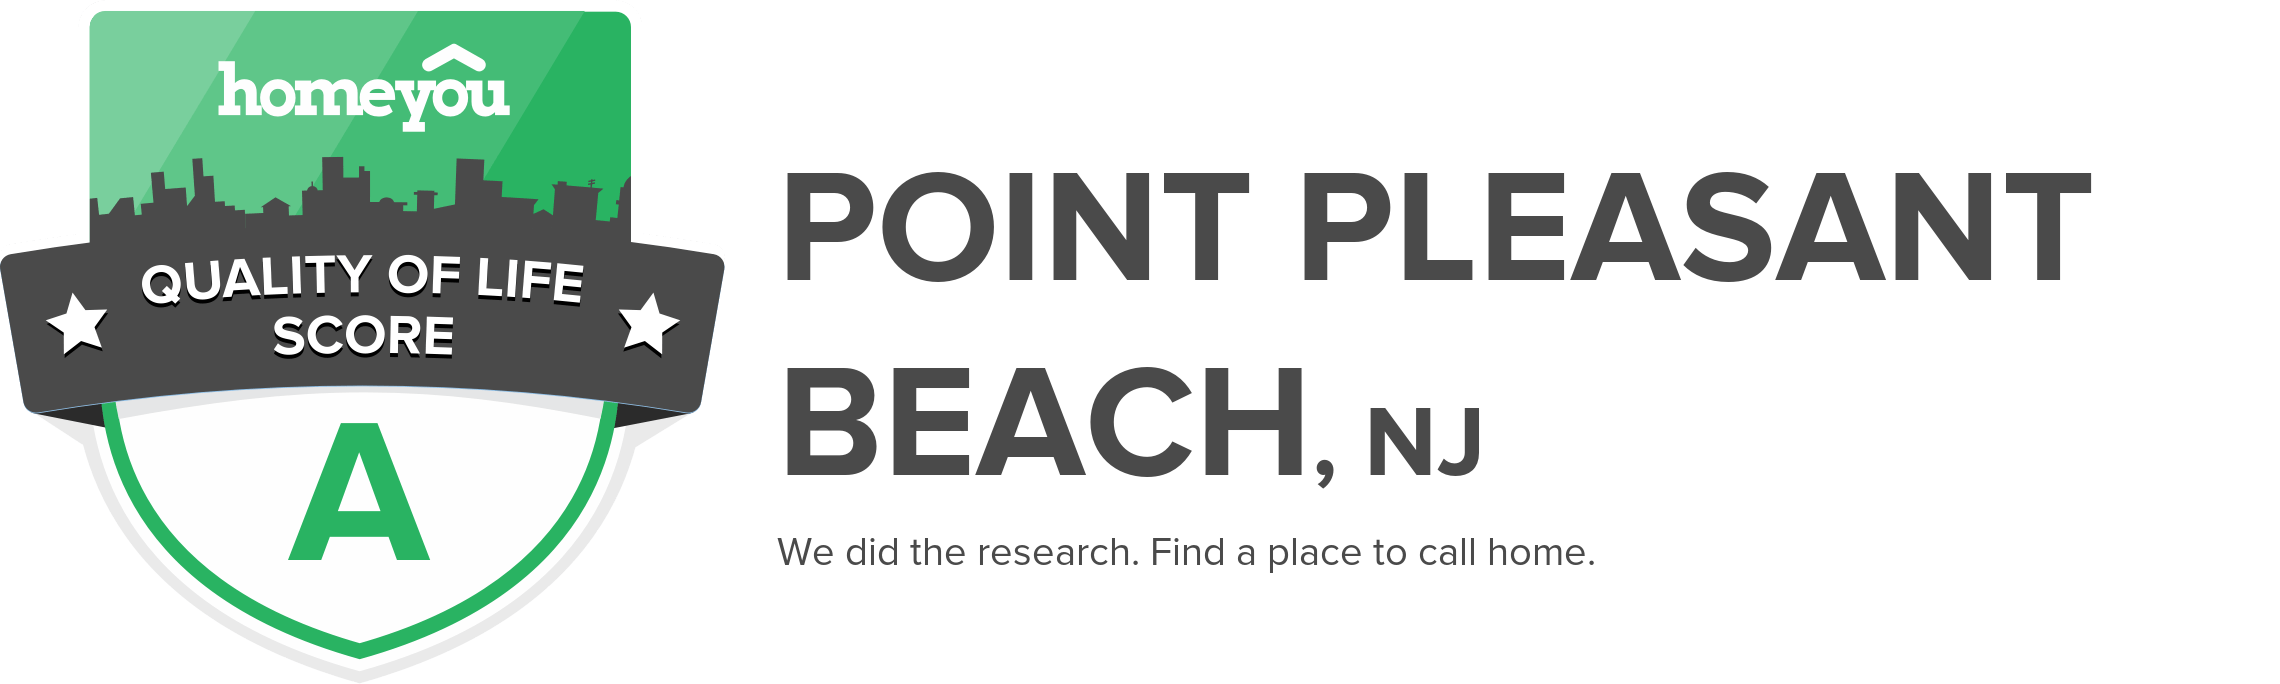 Point Pleasant Beach, NJ